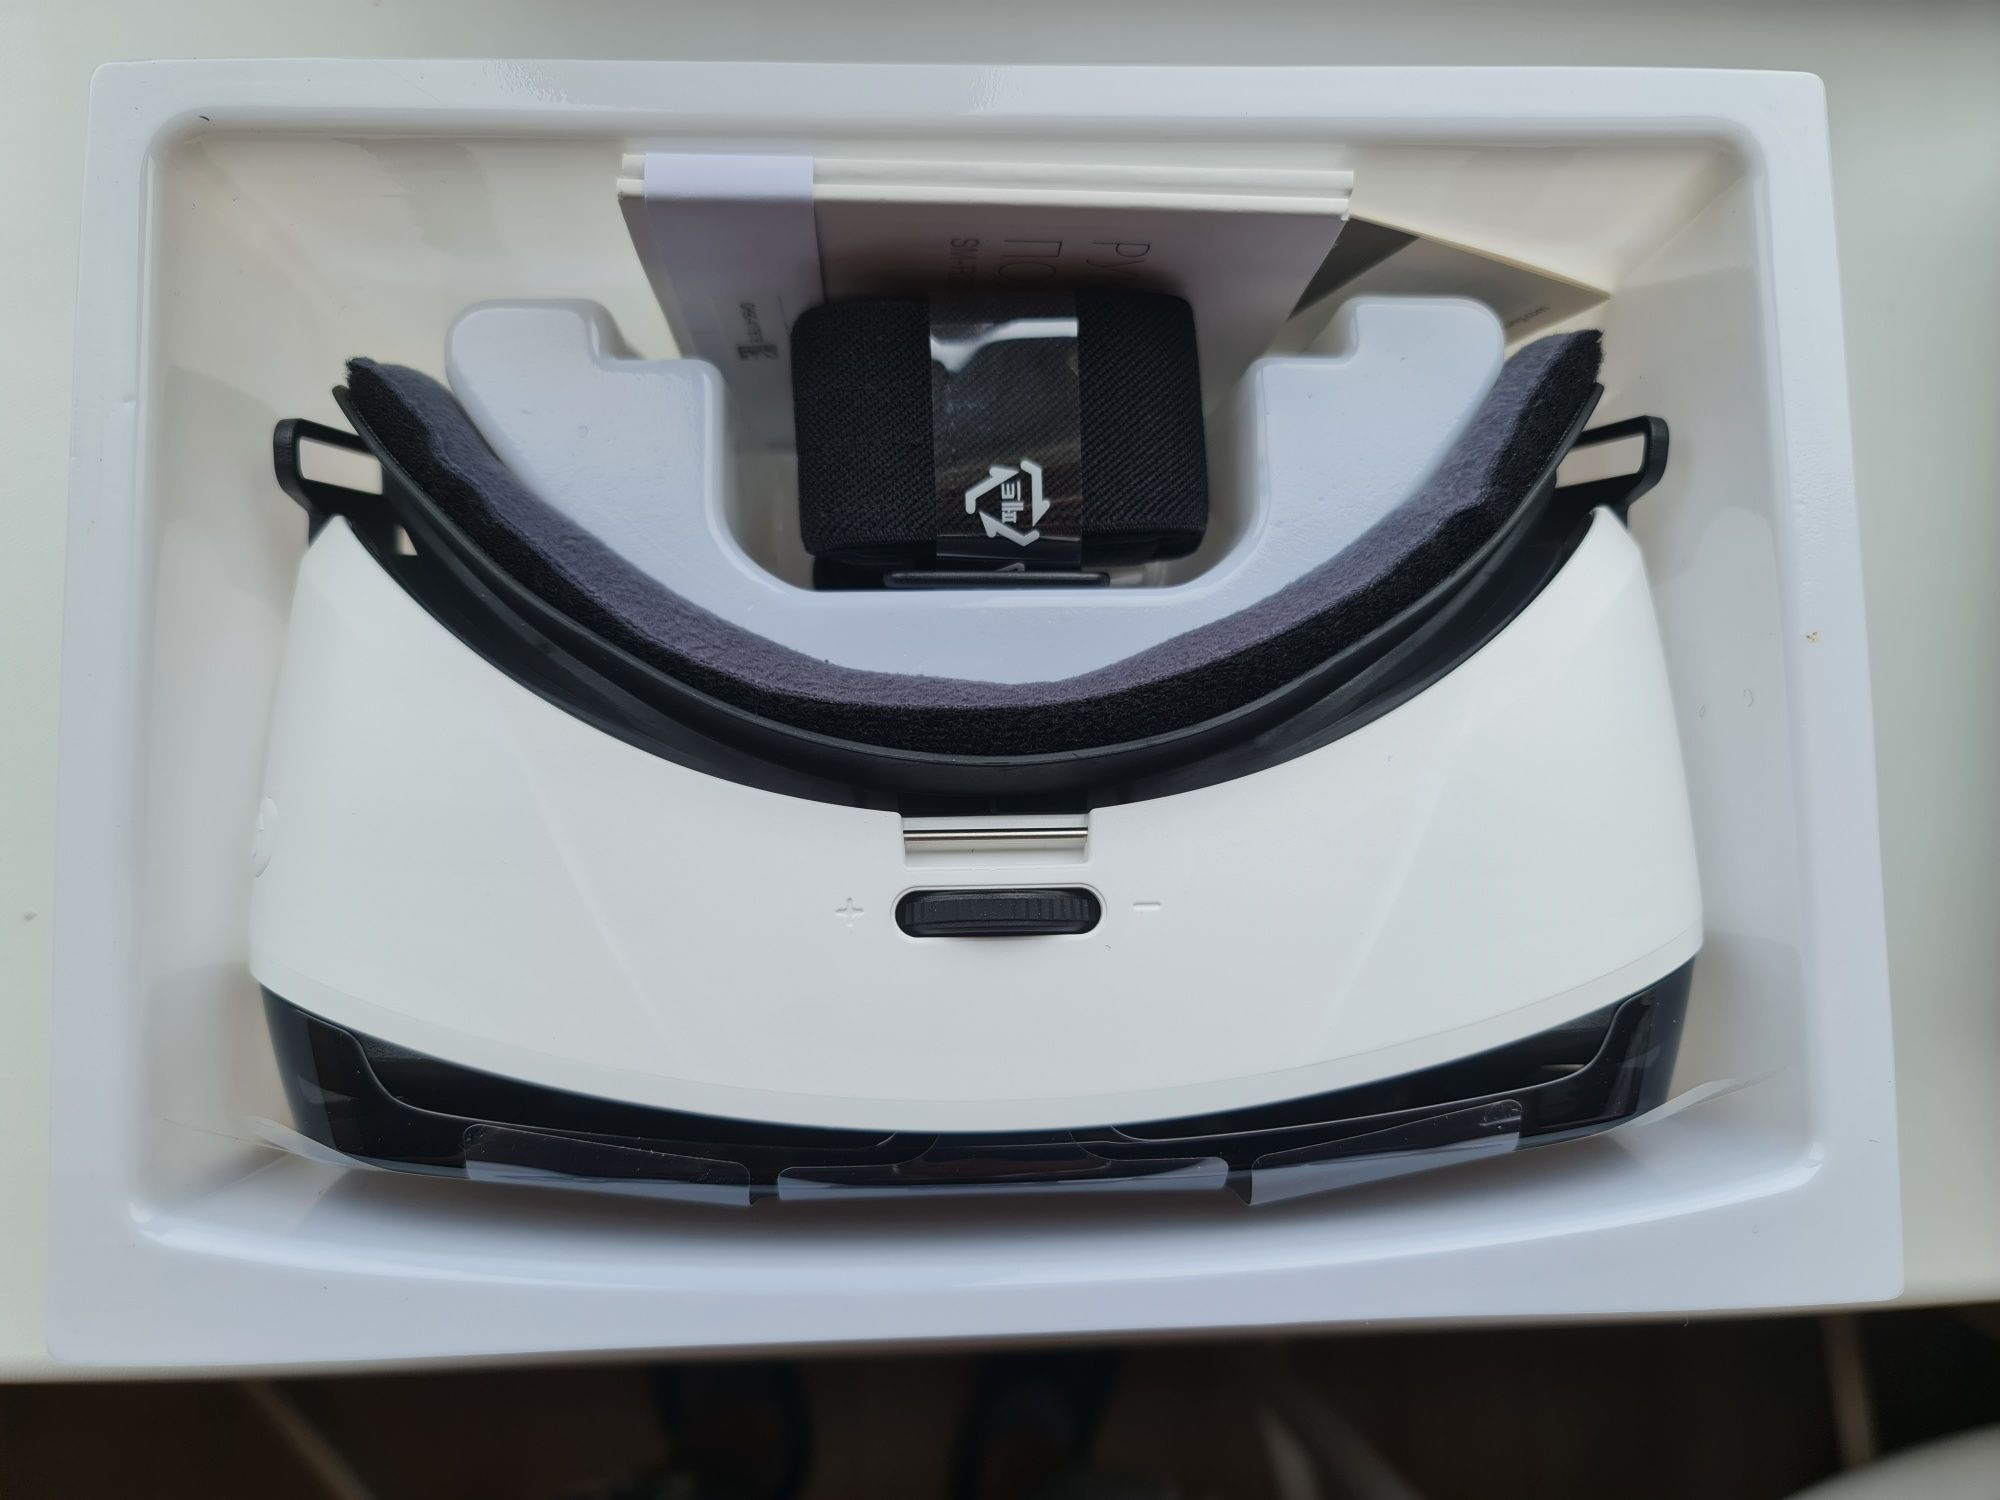 Окуляри віртуальної реальності Samsung Gear VR CE (SM-R322NZWASEK)